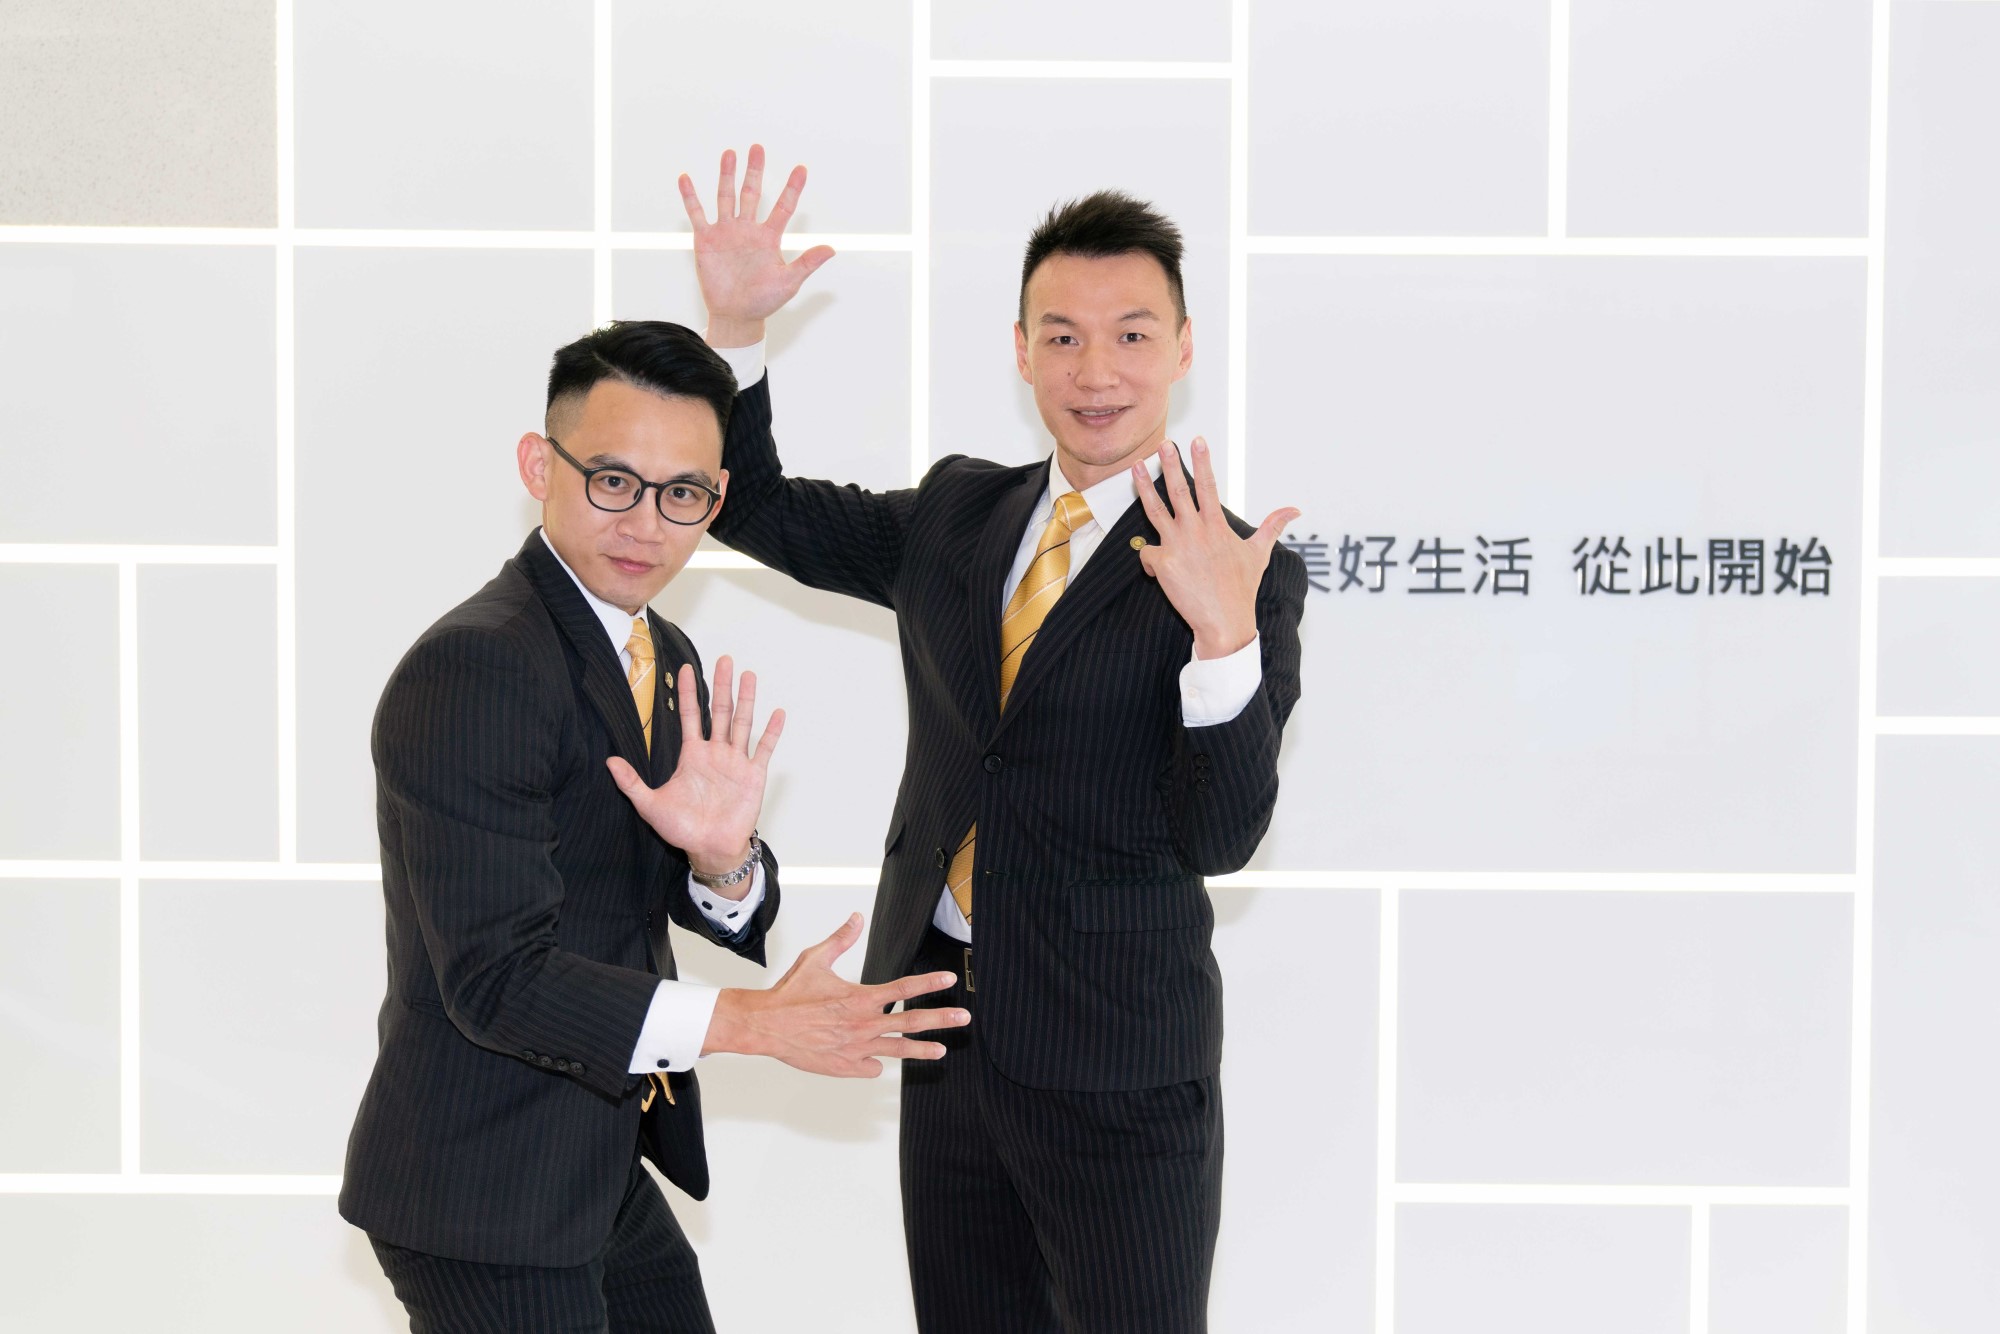 永慶房屋提供業務新人「前9個月每月5萬元」收入保障，減輕經濟負擔，全力衝刺學習。